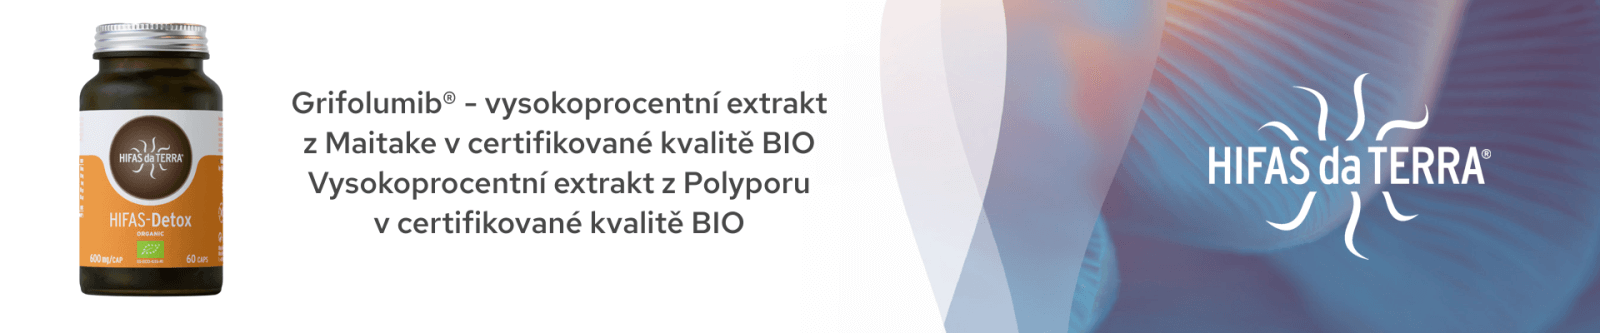 Grifolumib vysokoprocentní extrakt z Maitake v certifikované kvalitě BIO. Vysokoprocentní xtrakt z Polyporu v certifikované kvalitě BIO.